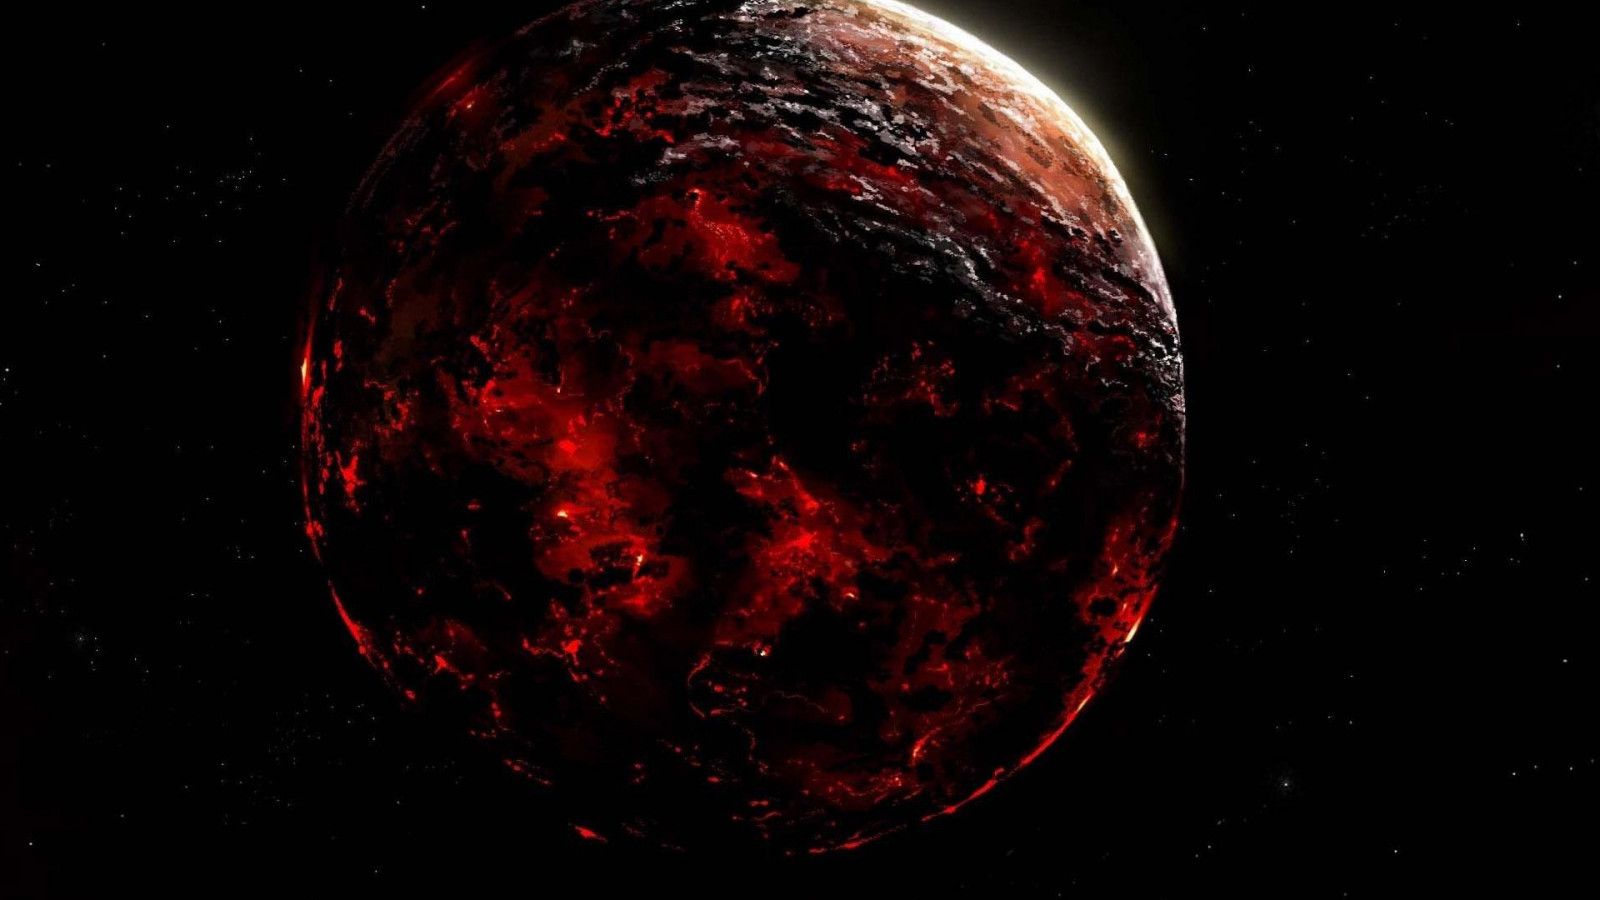 Red planet on fire HD desktop wallpaper, Widescreen, High Definition